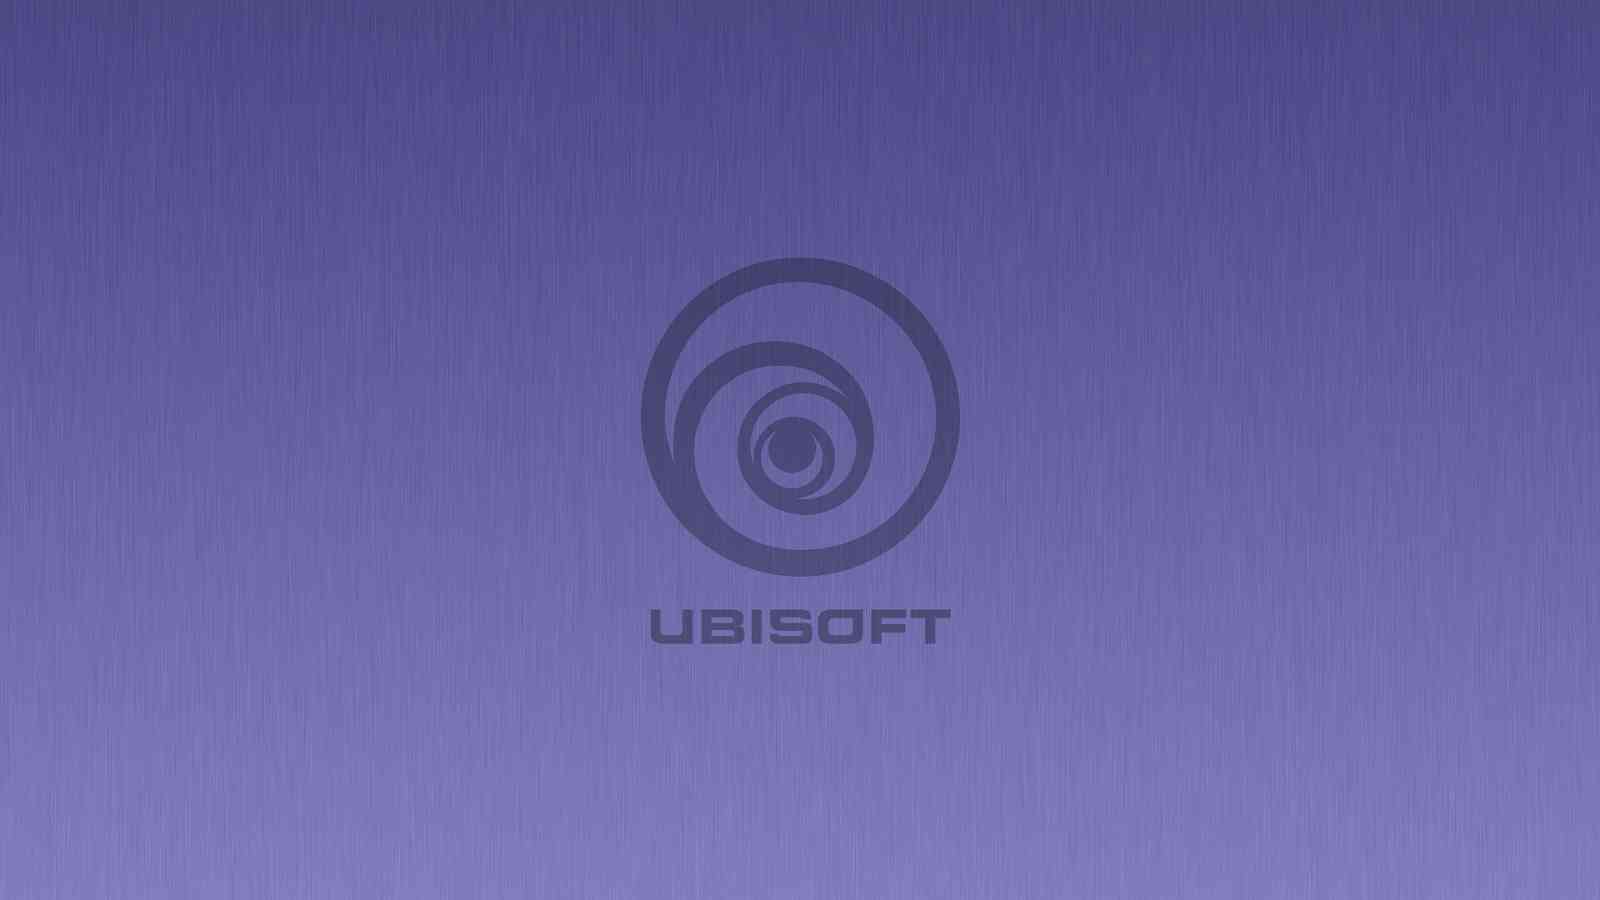 Ubisoft zjednodušuje a modernizuje své logo